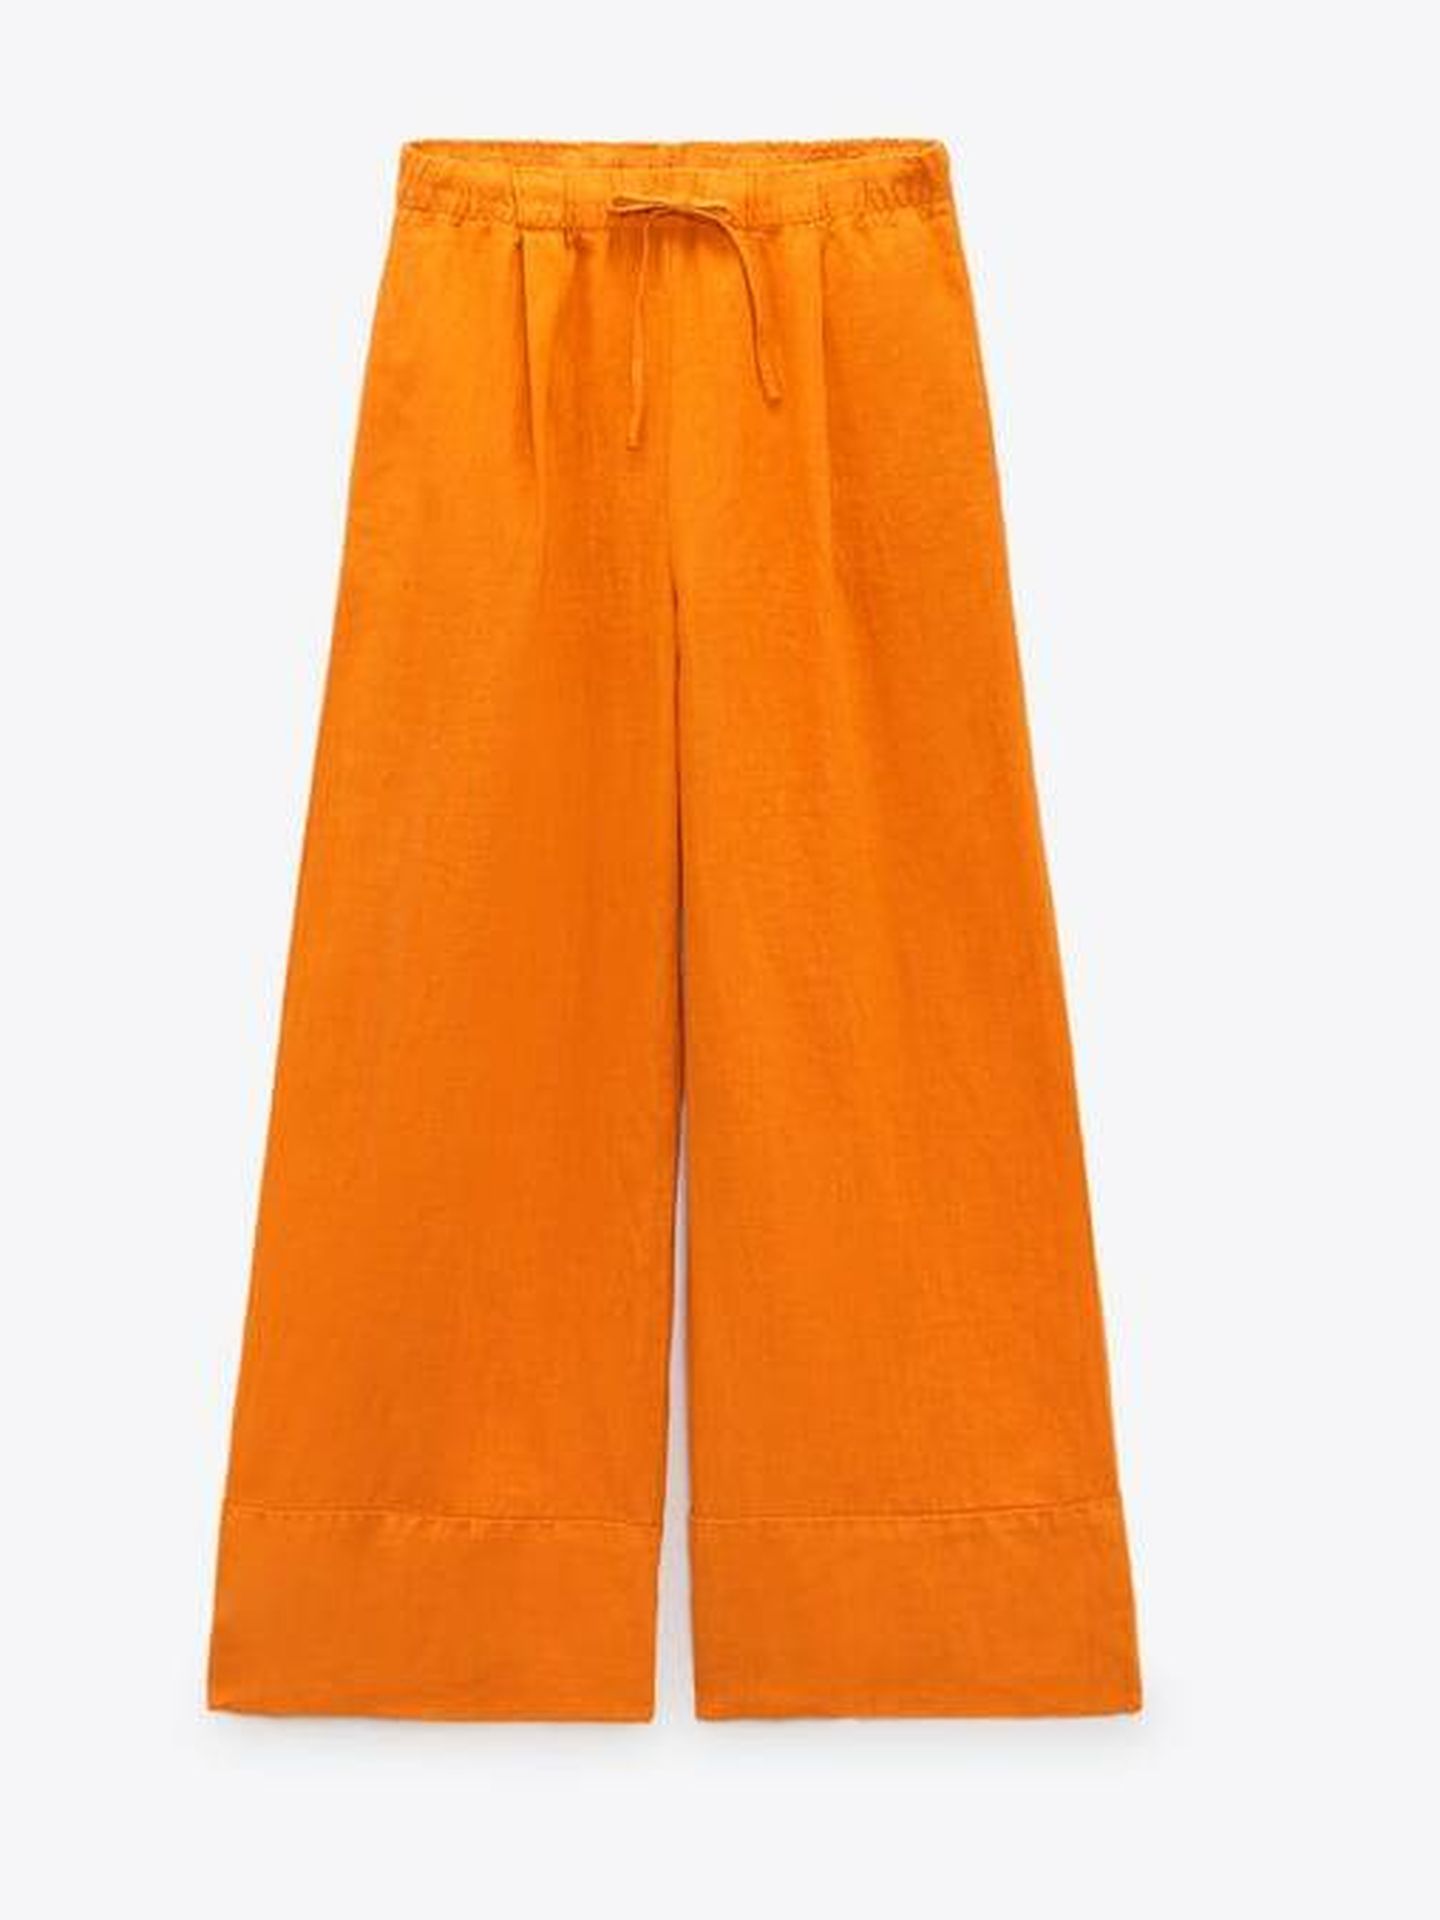  El nuevo pantalón de Zara para combinar con tu top. (Cortesía)